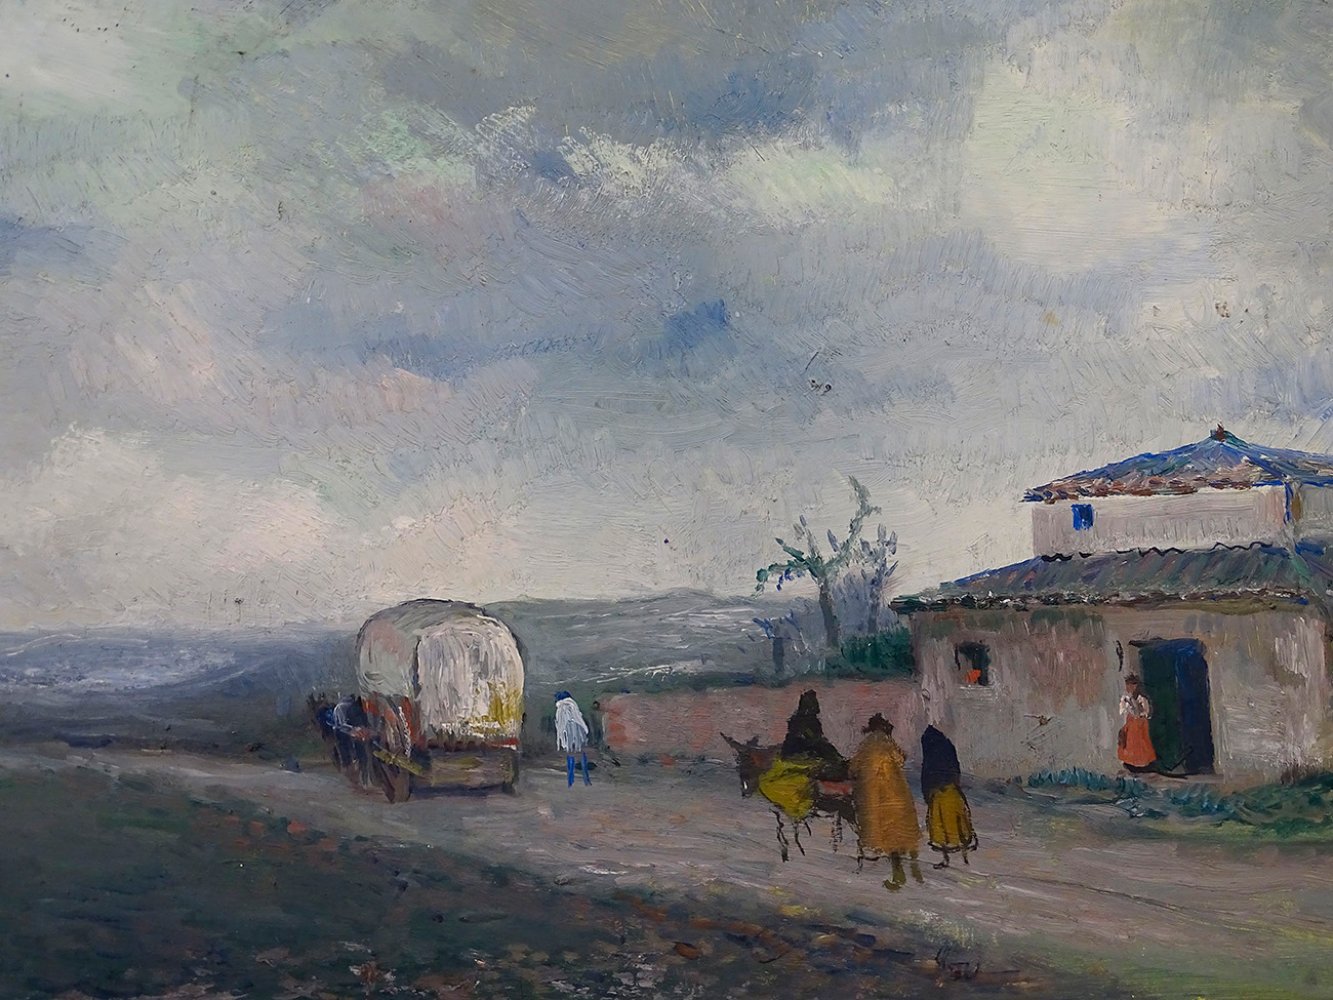 RICARDO BAROJA NESSI (Riotinto, Huelva, 1871 - Vera de Bidasoa, Navarre, 1953).Peones camineros" ("